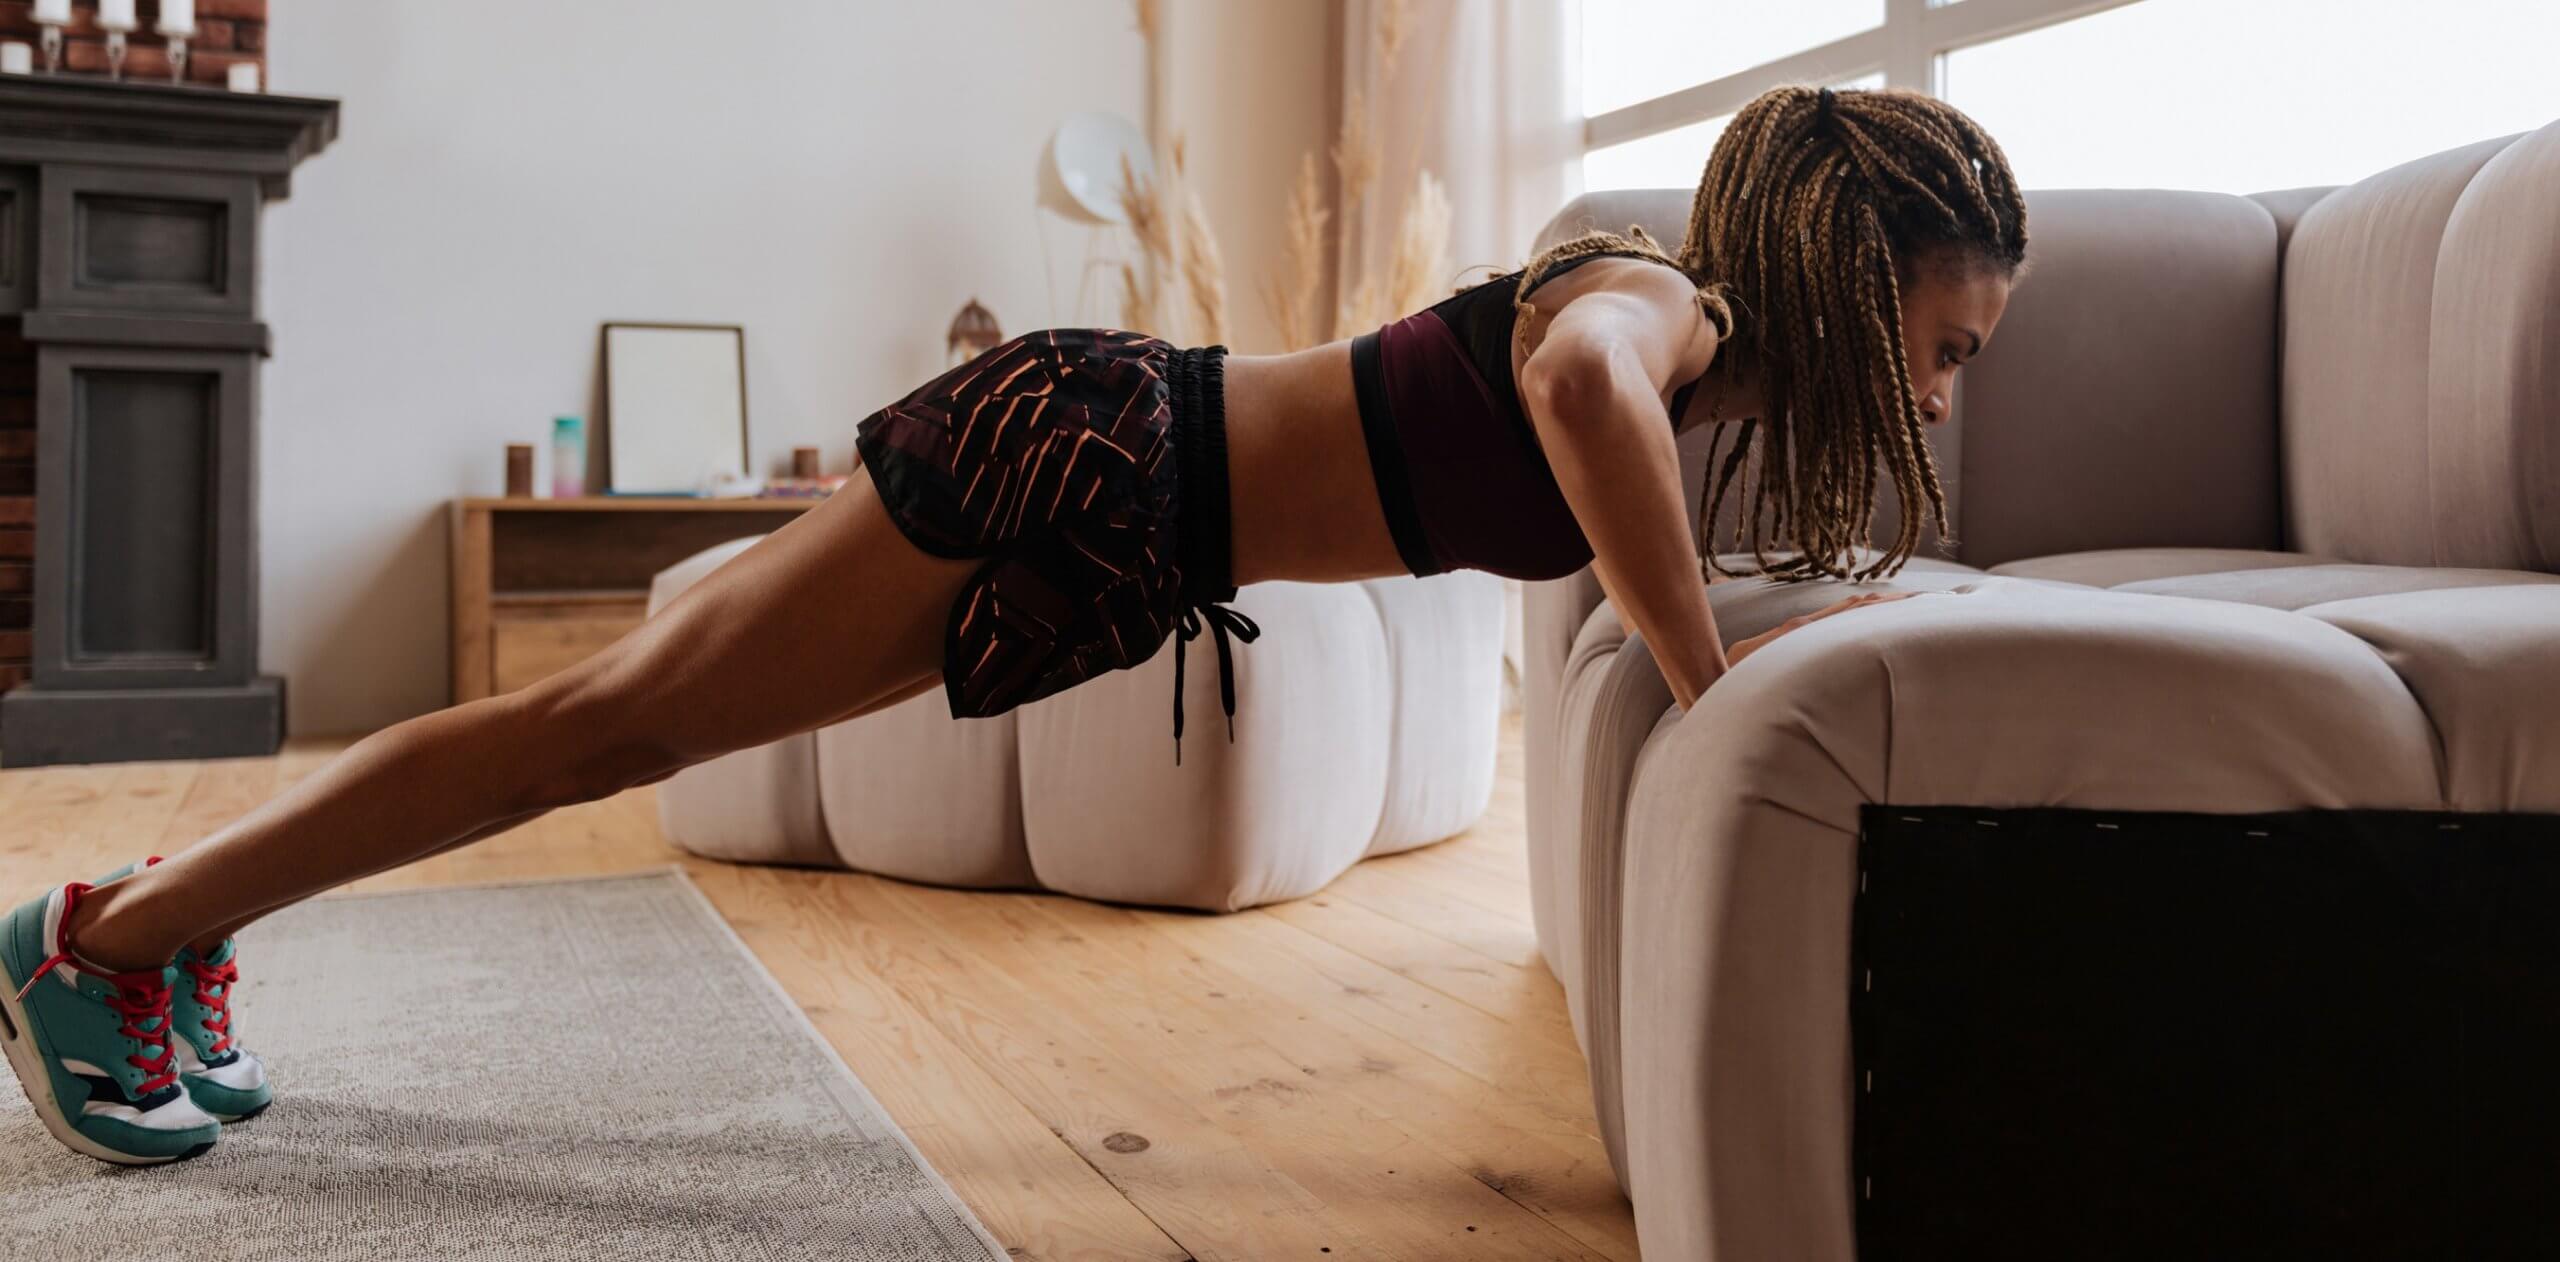 Woman wearing shorts and top doing pushups near sofa